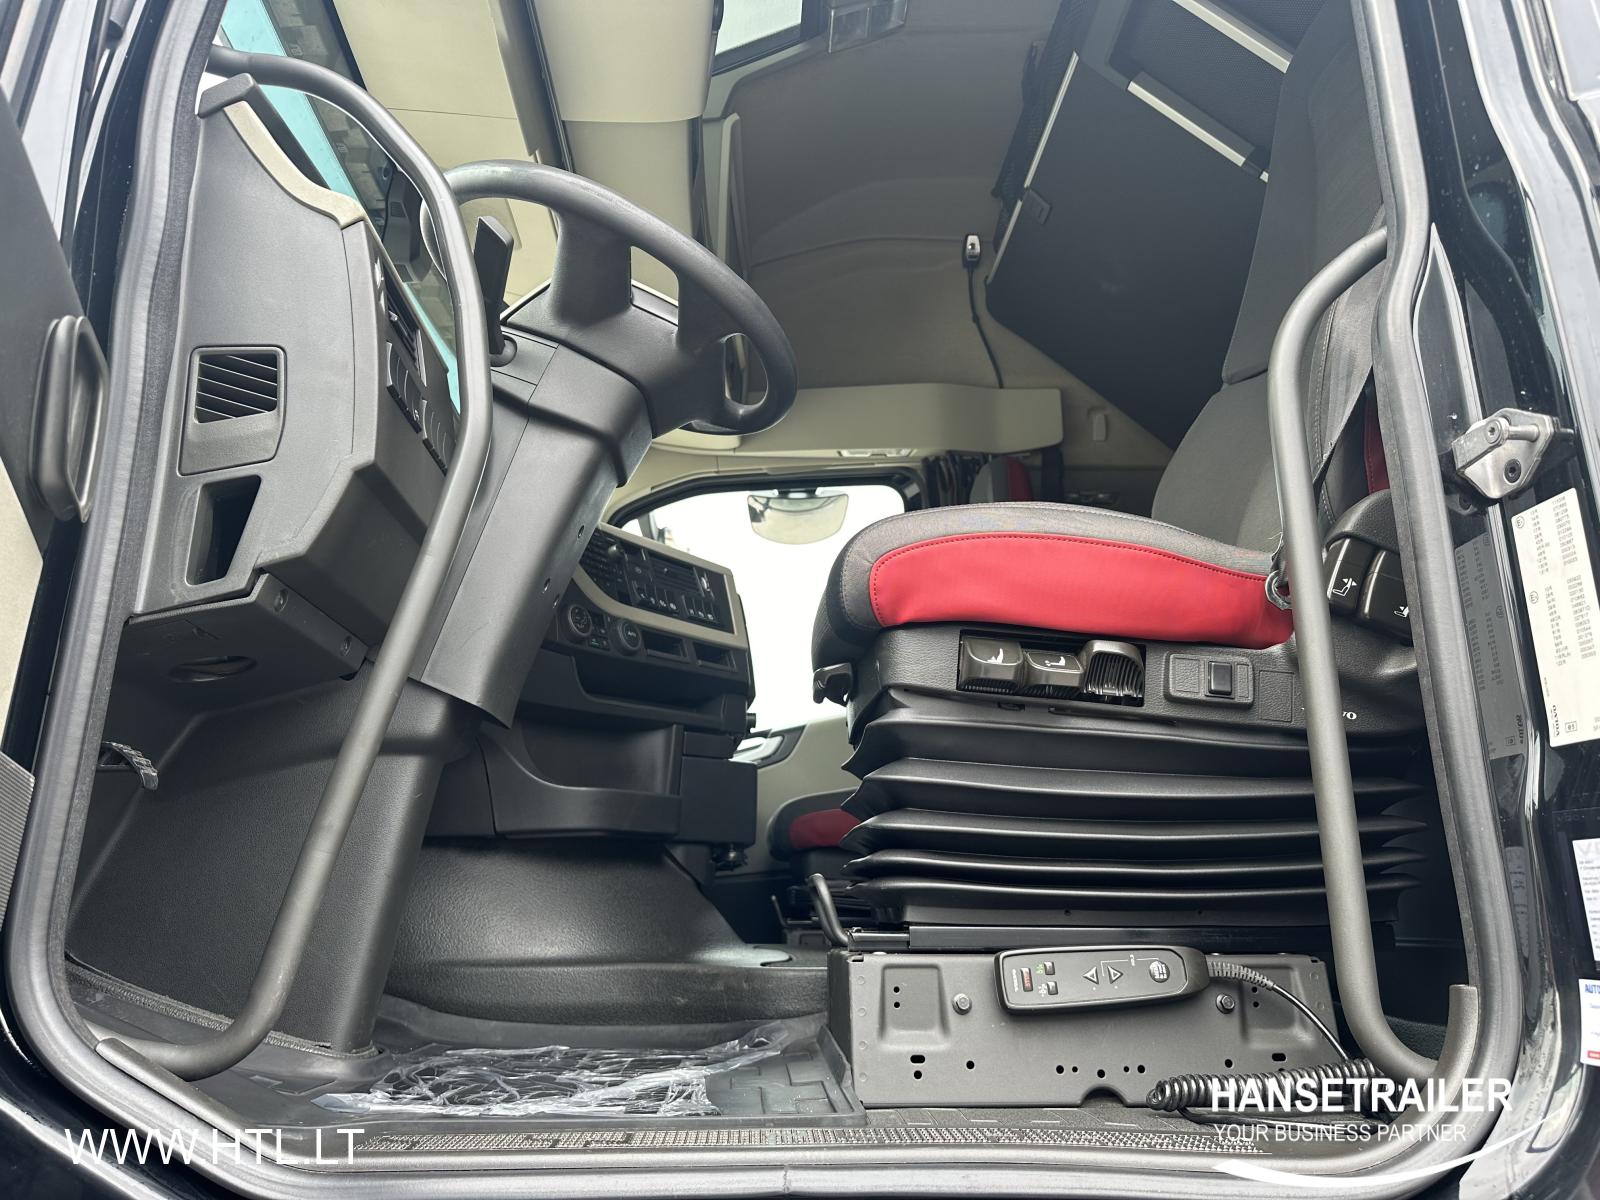 2019 Kuormaauto 4x2 Volvo FH FH500 XL KB Chassis VEB+